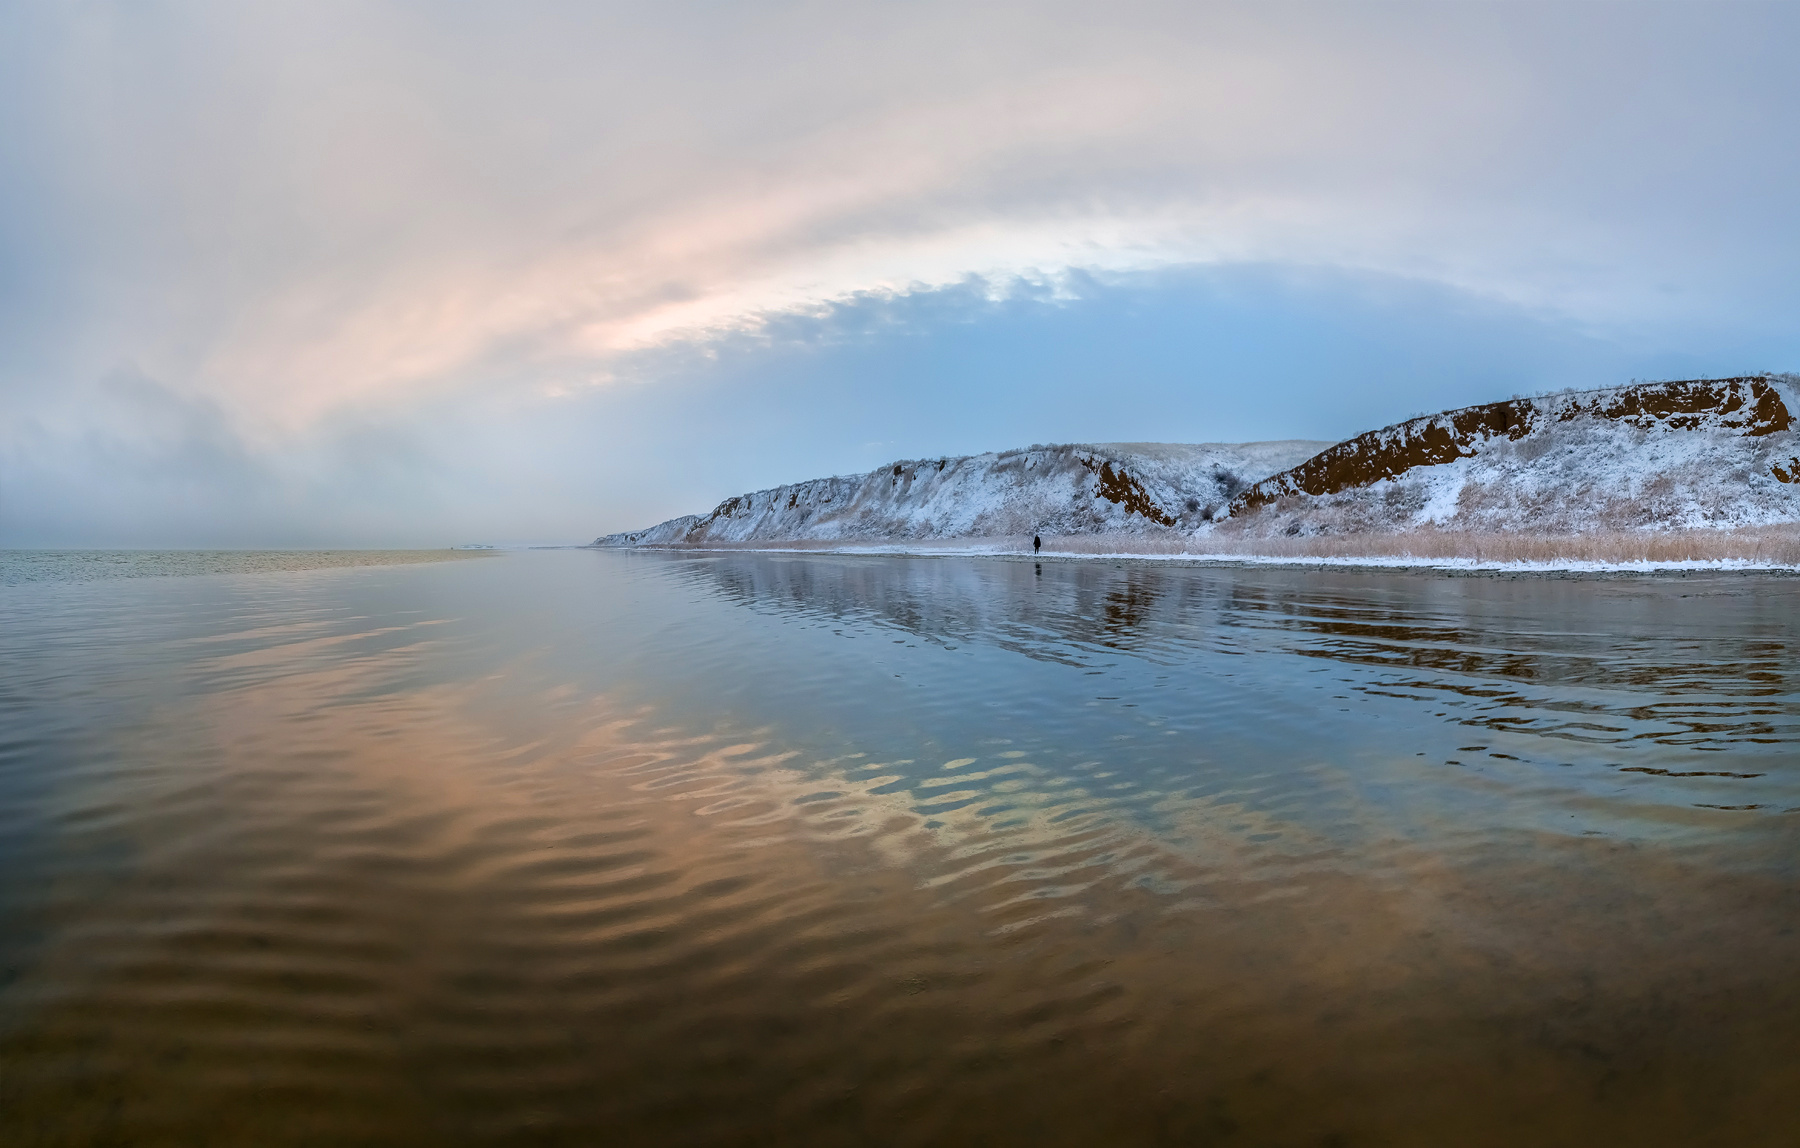 Озеро Ма́ныч-Гуди́ло Ставропольский край зима снег путешествие фотоальбом Ставрополье фотопроект озеро Маныч рассвет вода отражение берег